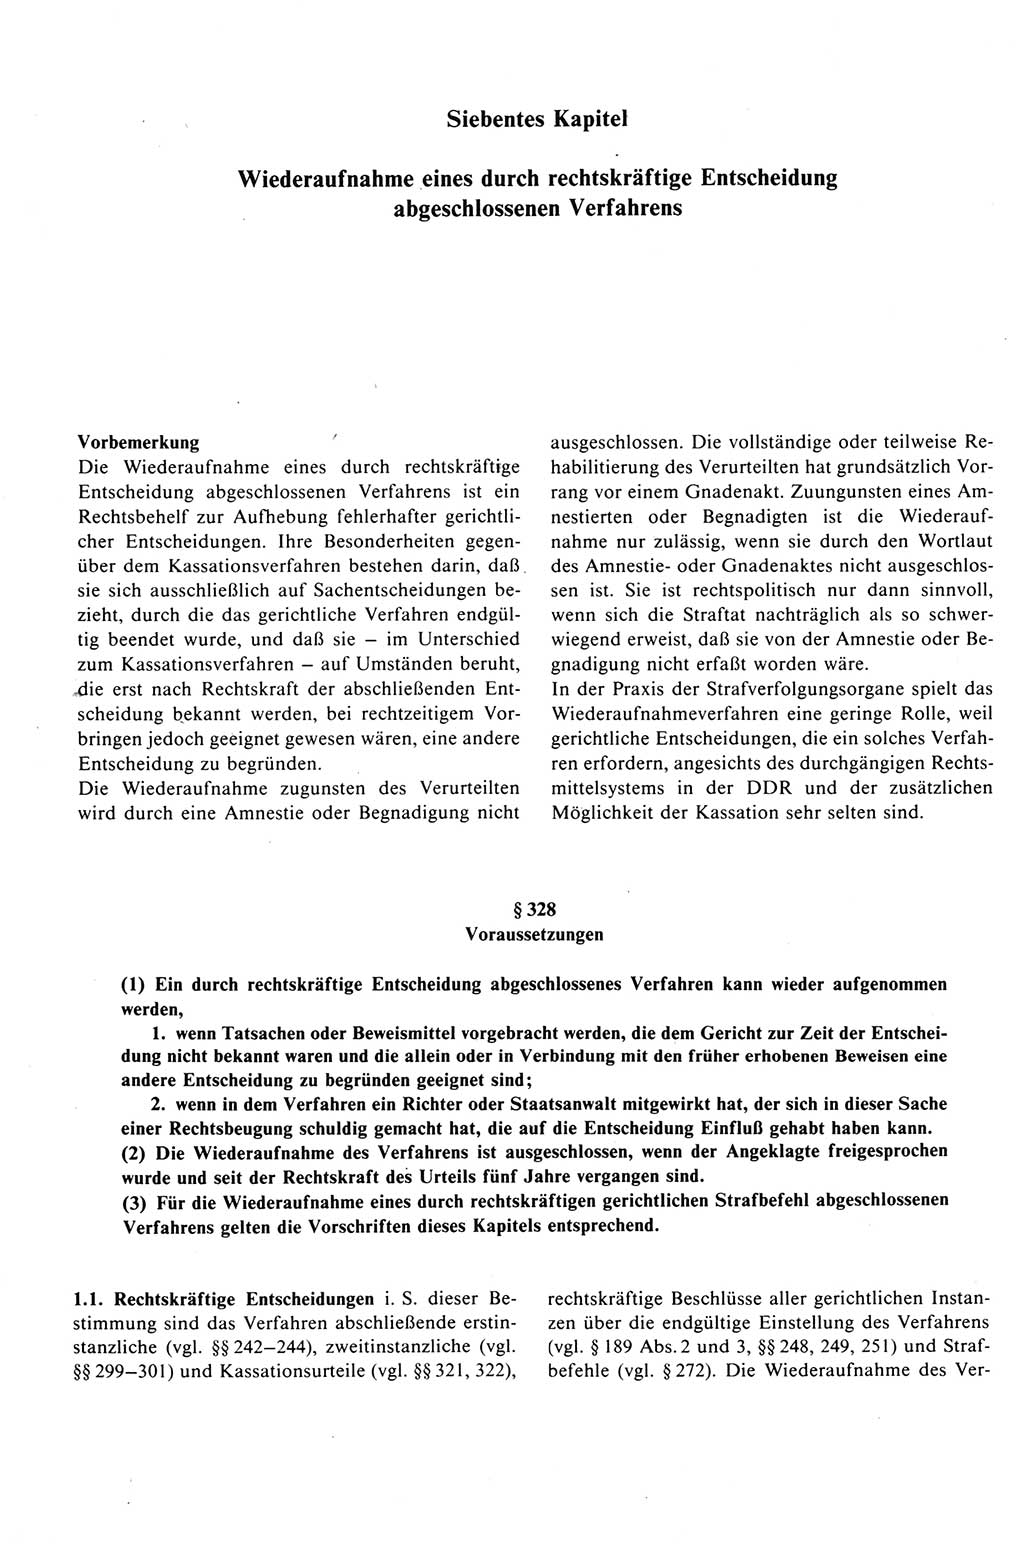 Strafprozeßrecht der DDR (Deutsche Demokratische Republik), Kommentar zur Strafprozeßordnung (StPO) 1989, Seite 376 (Strafprozeßr. DDR Komm. StPO 1989, S. 376)